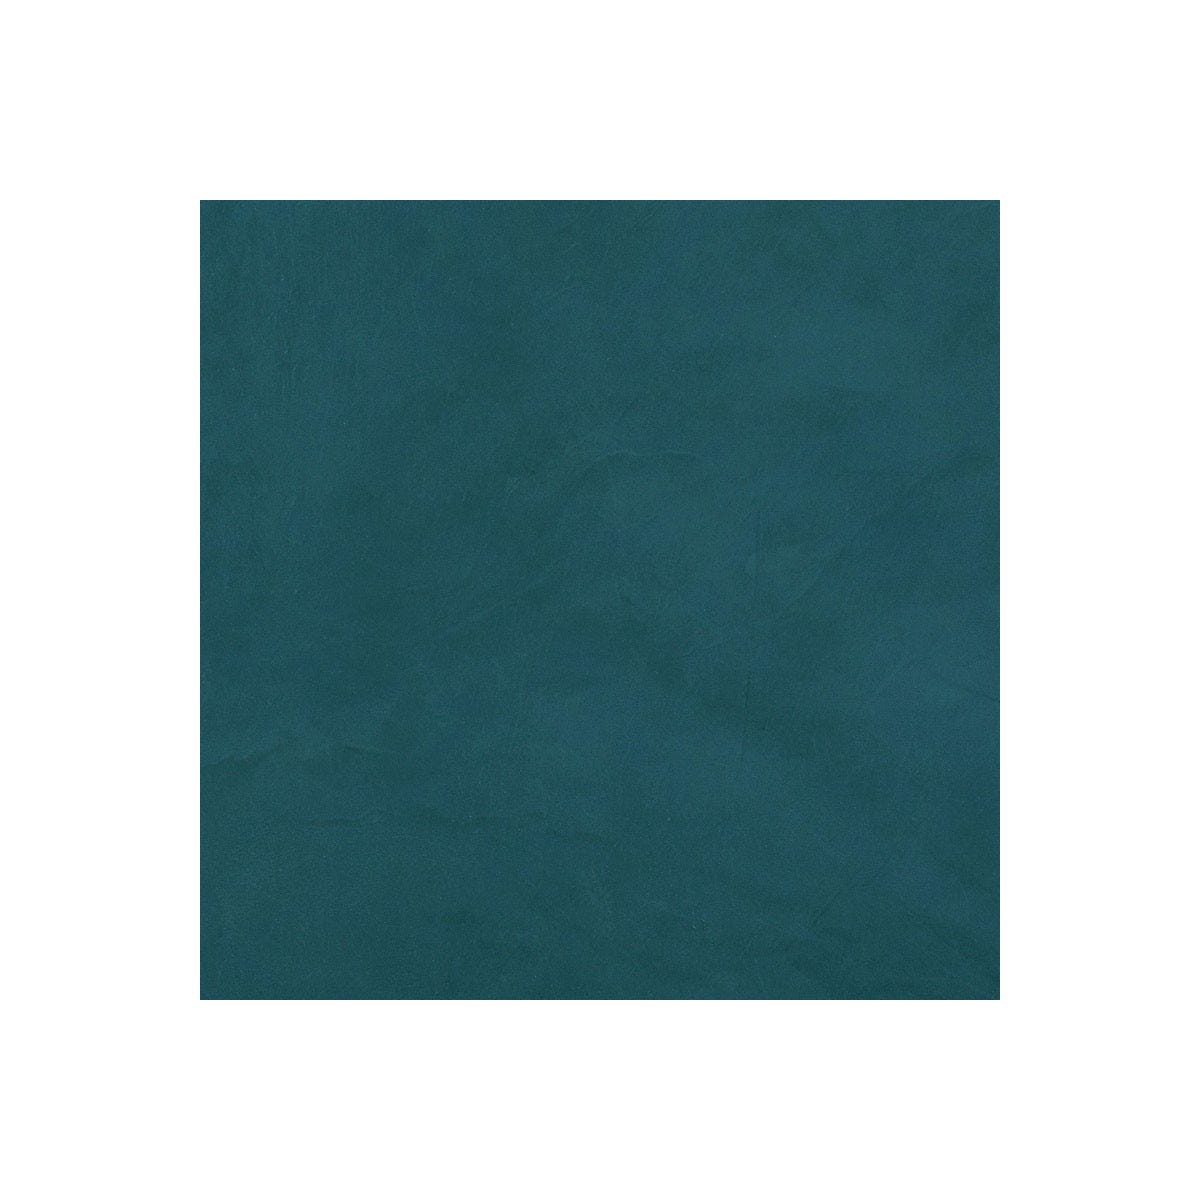 Béton Ciré Sol en - Primaire et vernis de finition inclus - 2 m² (en 2 couches) - Turquin Bleu - ARCANE INDUSTRIES 1